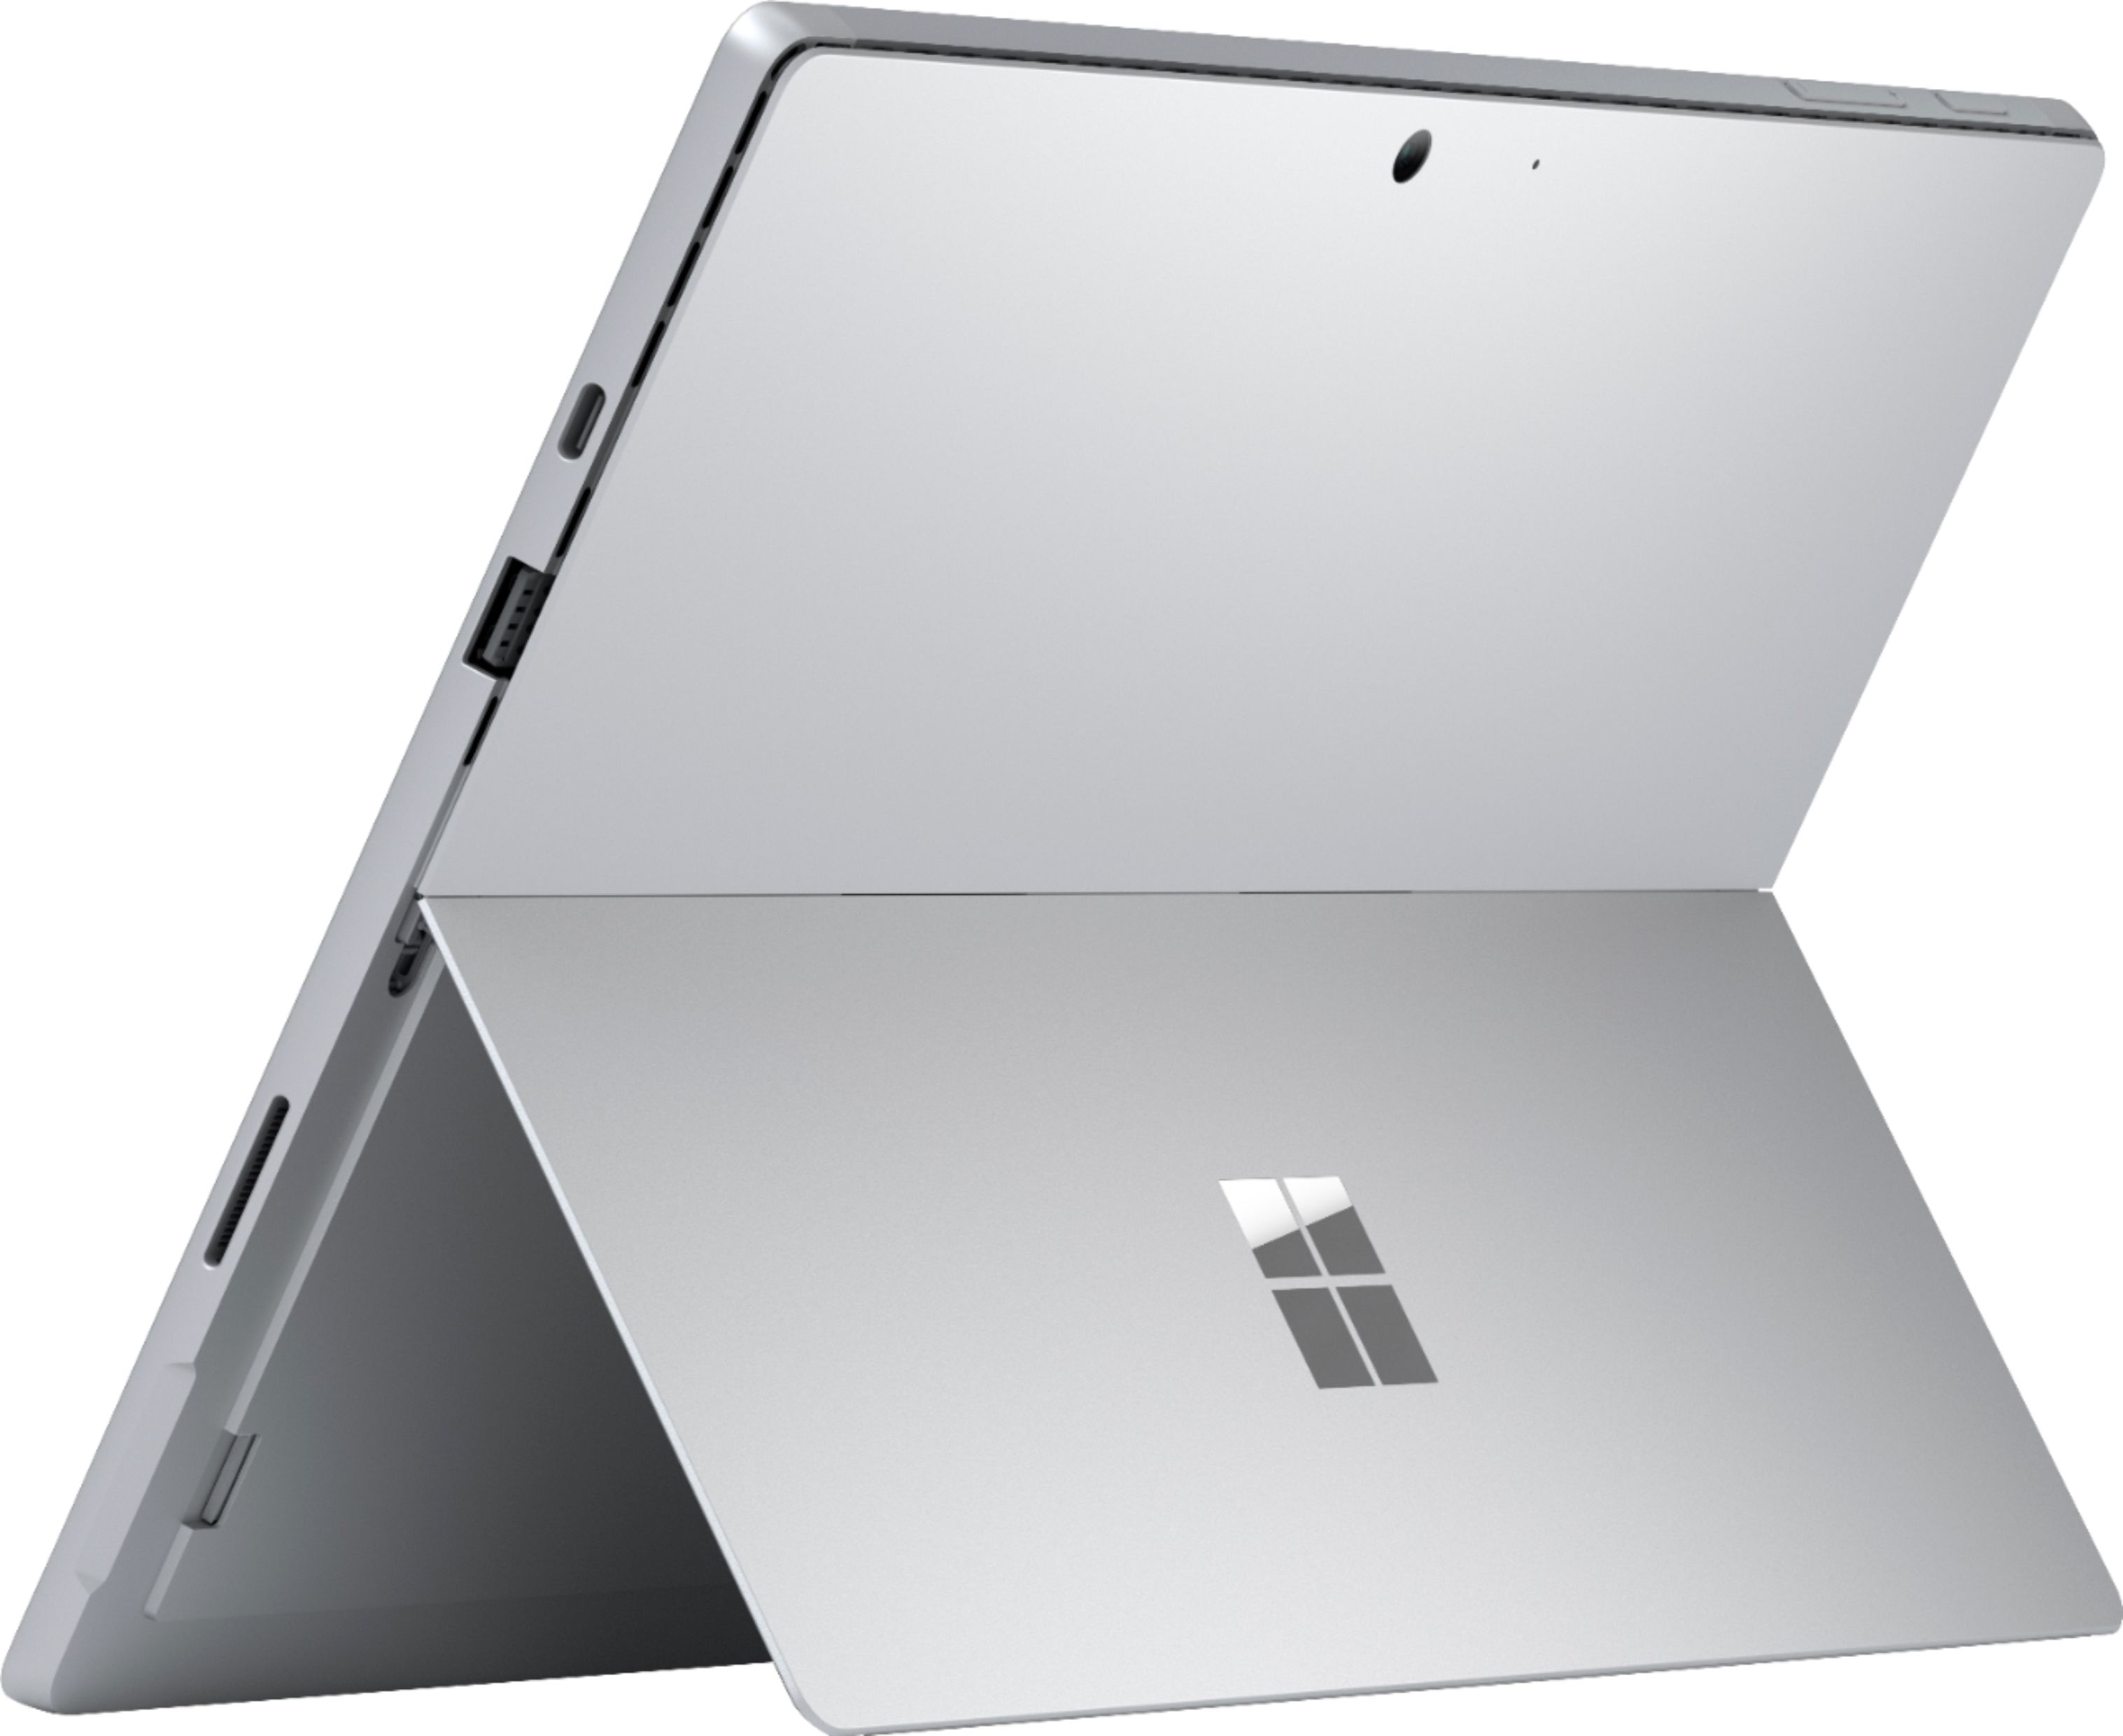 大阪購入 - Surface Pro 4 FML-00008 - 非対面販売:11747円 - ブランド ...